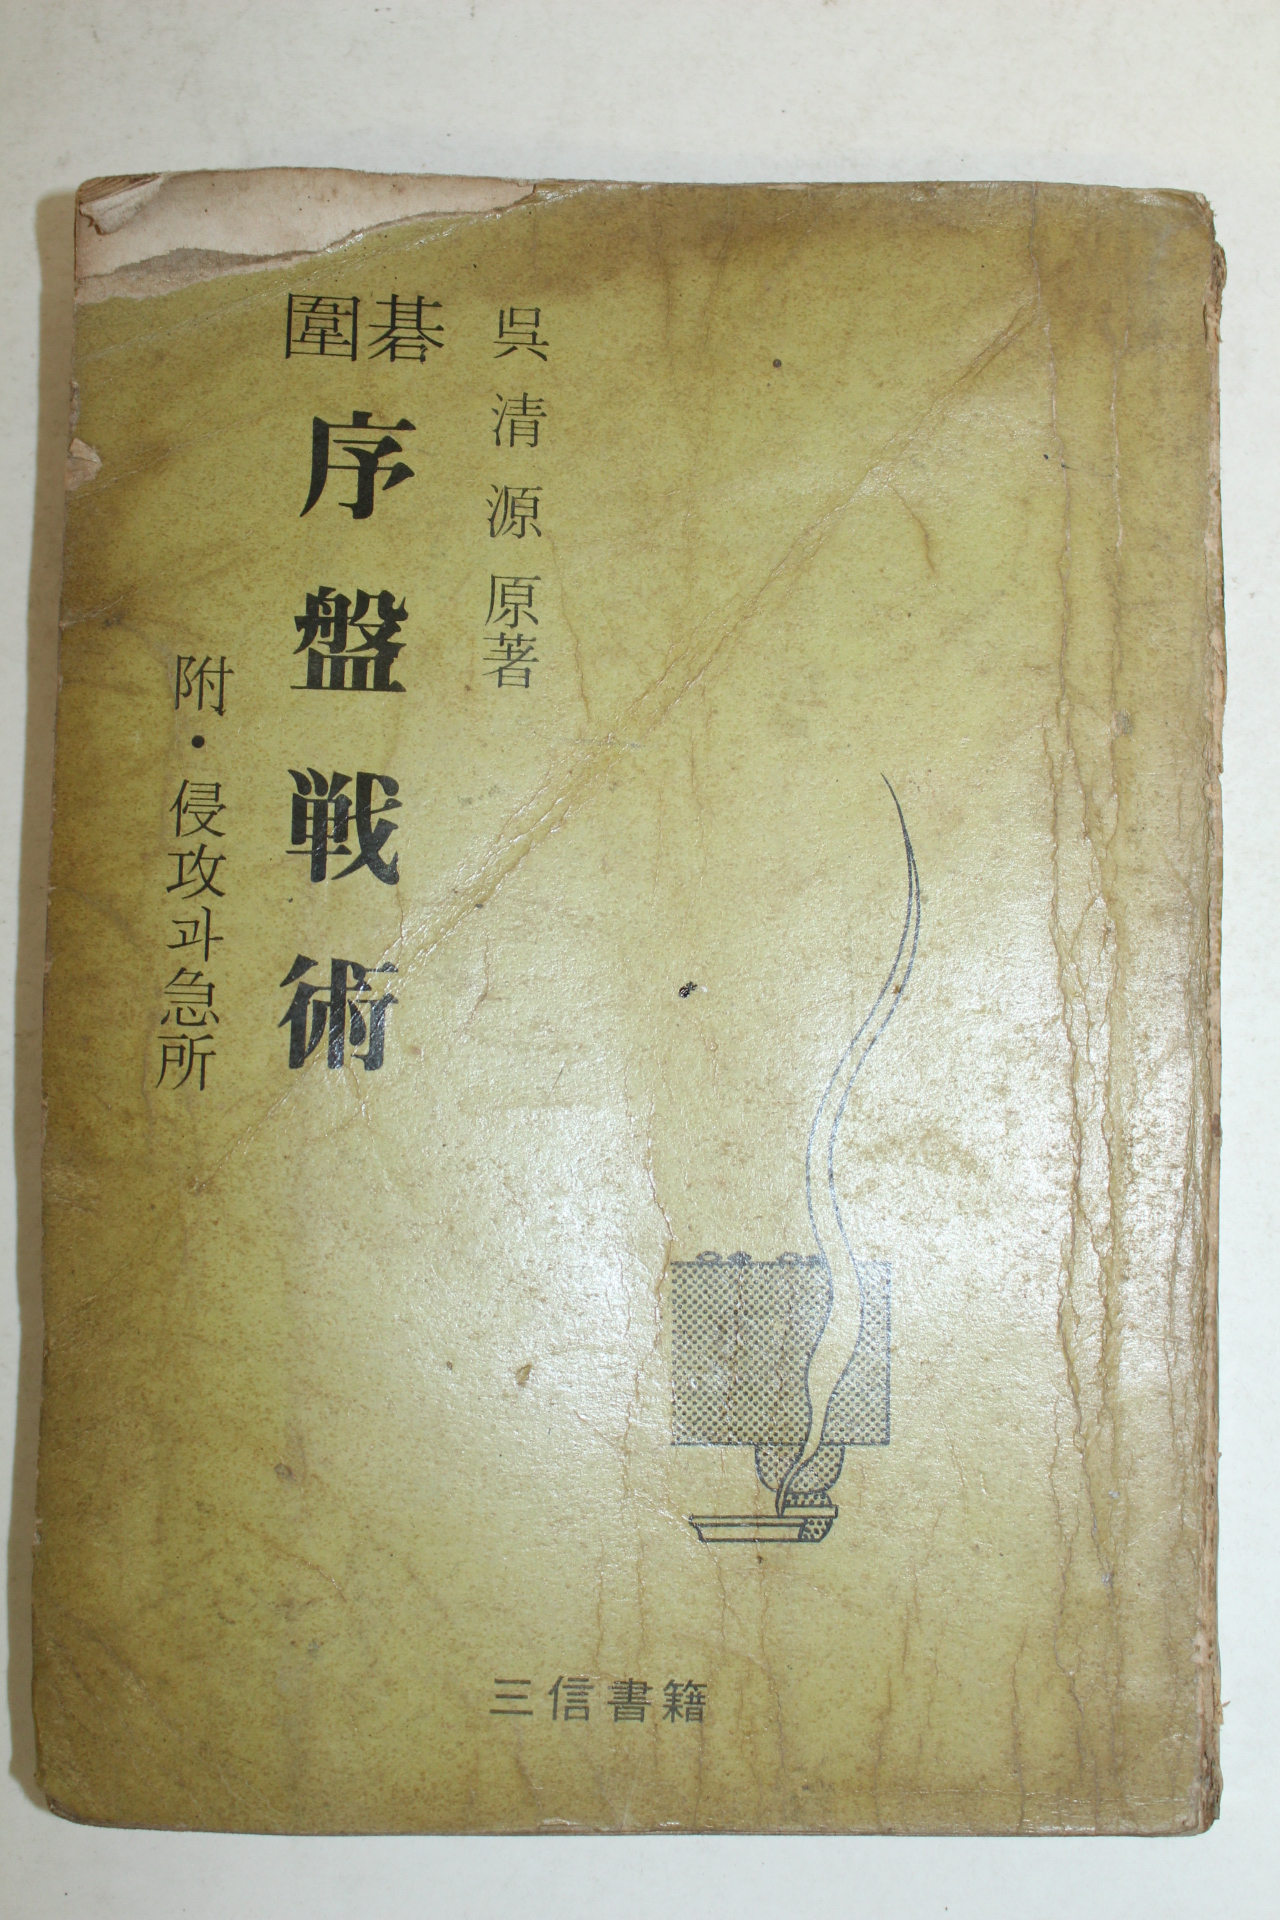 1968년 오청원(吳淸源)바둑책 (圍碁)序盤戰術 : 附侵攻과急所